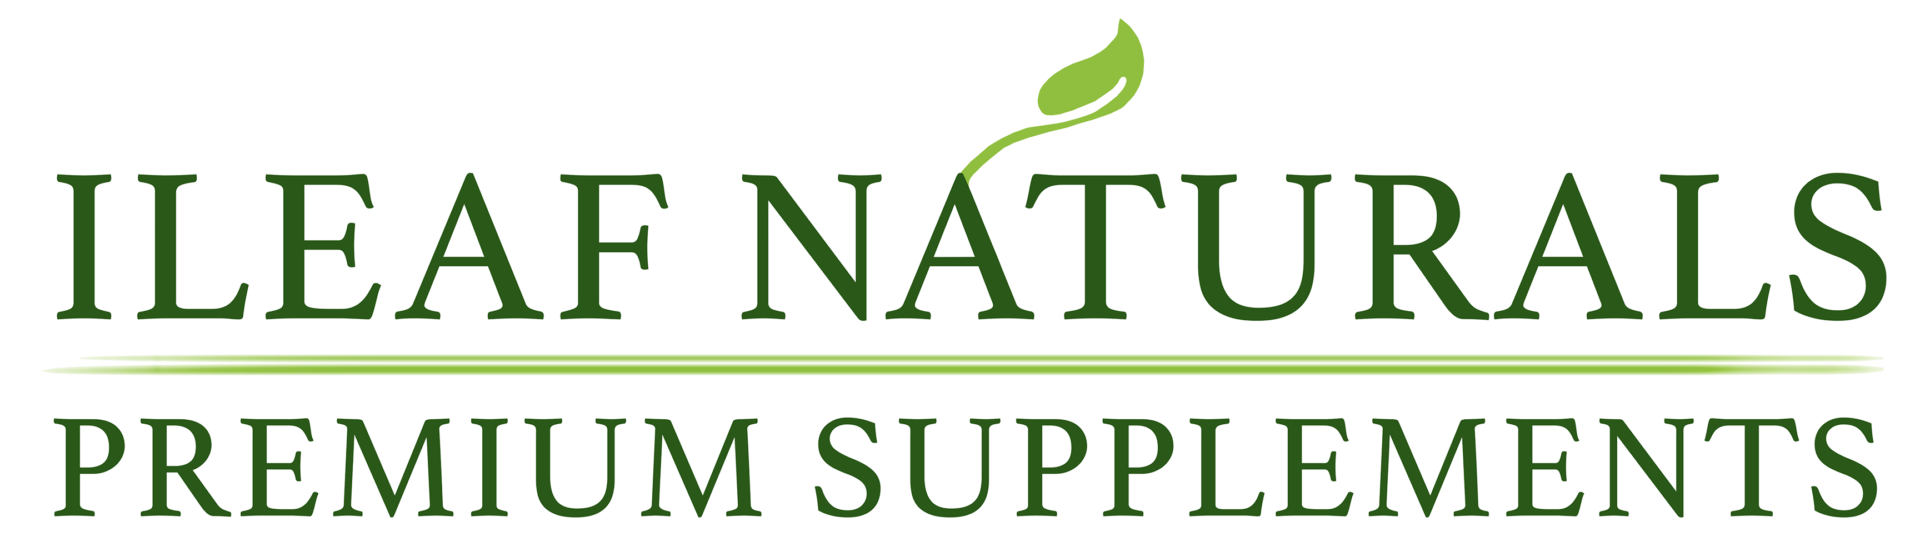 iLeaf Naturals Official Site | Premium Supplements